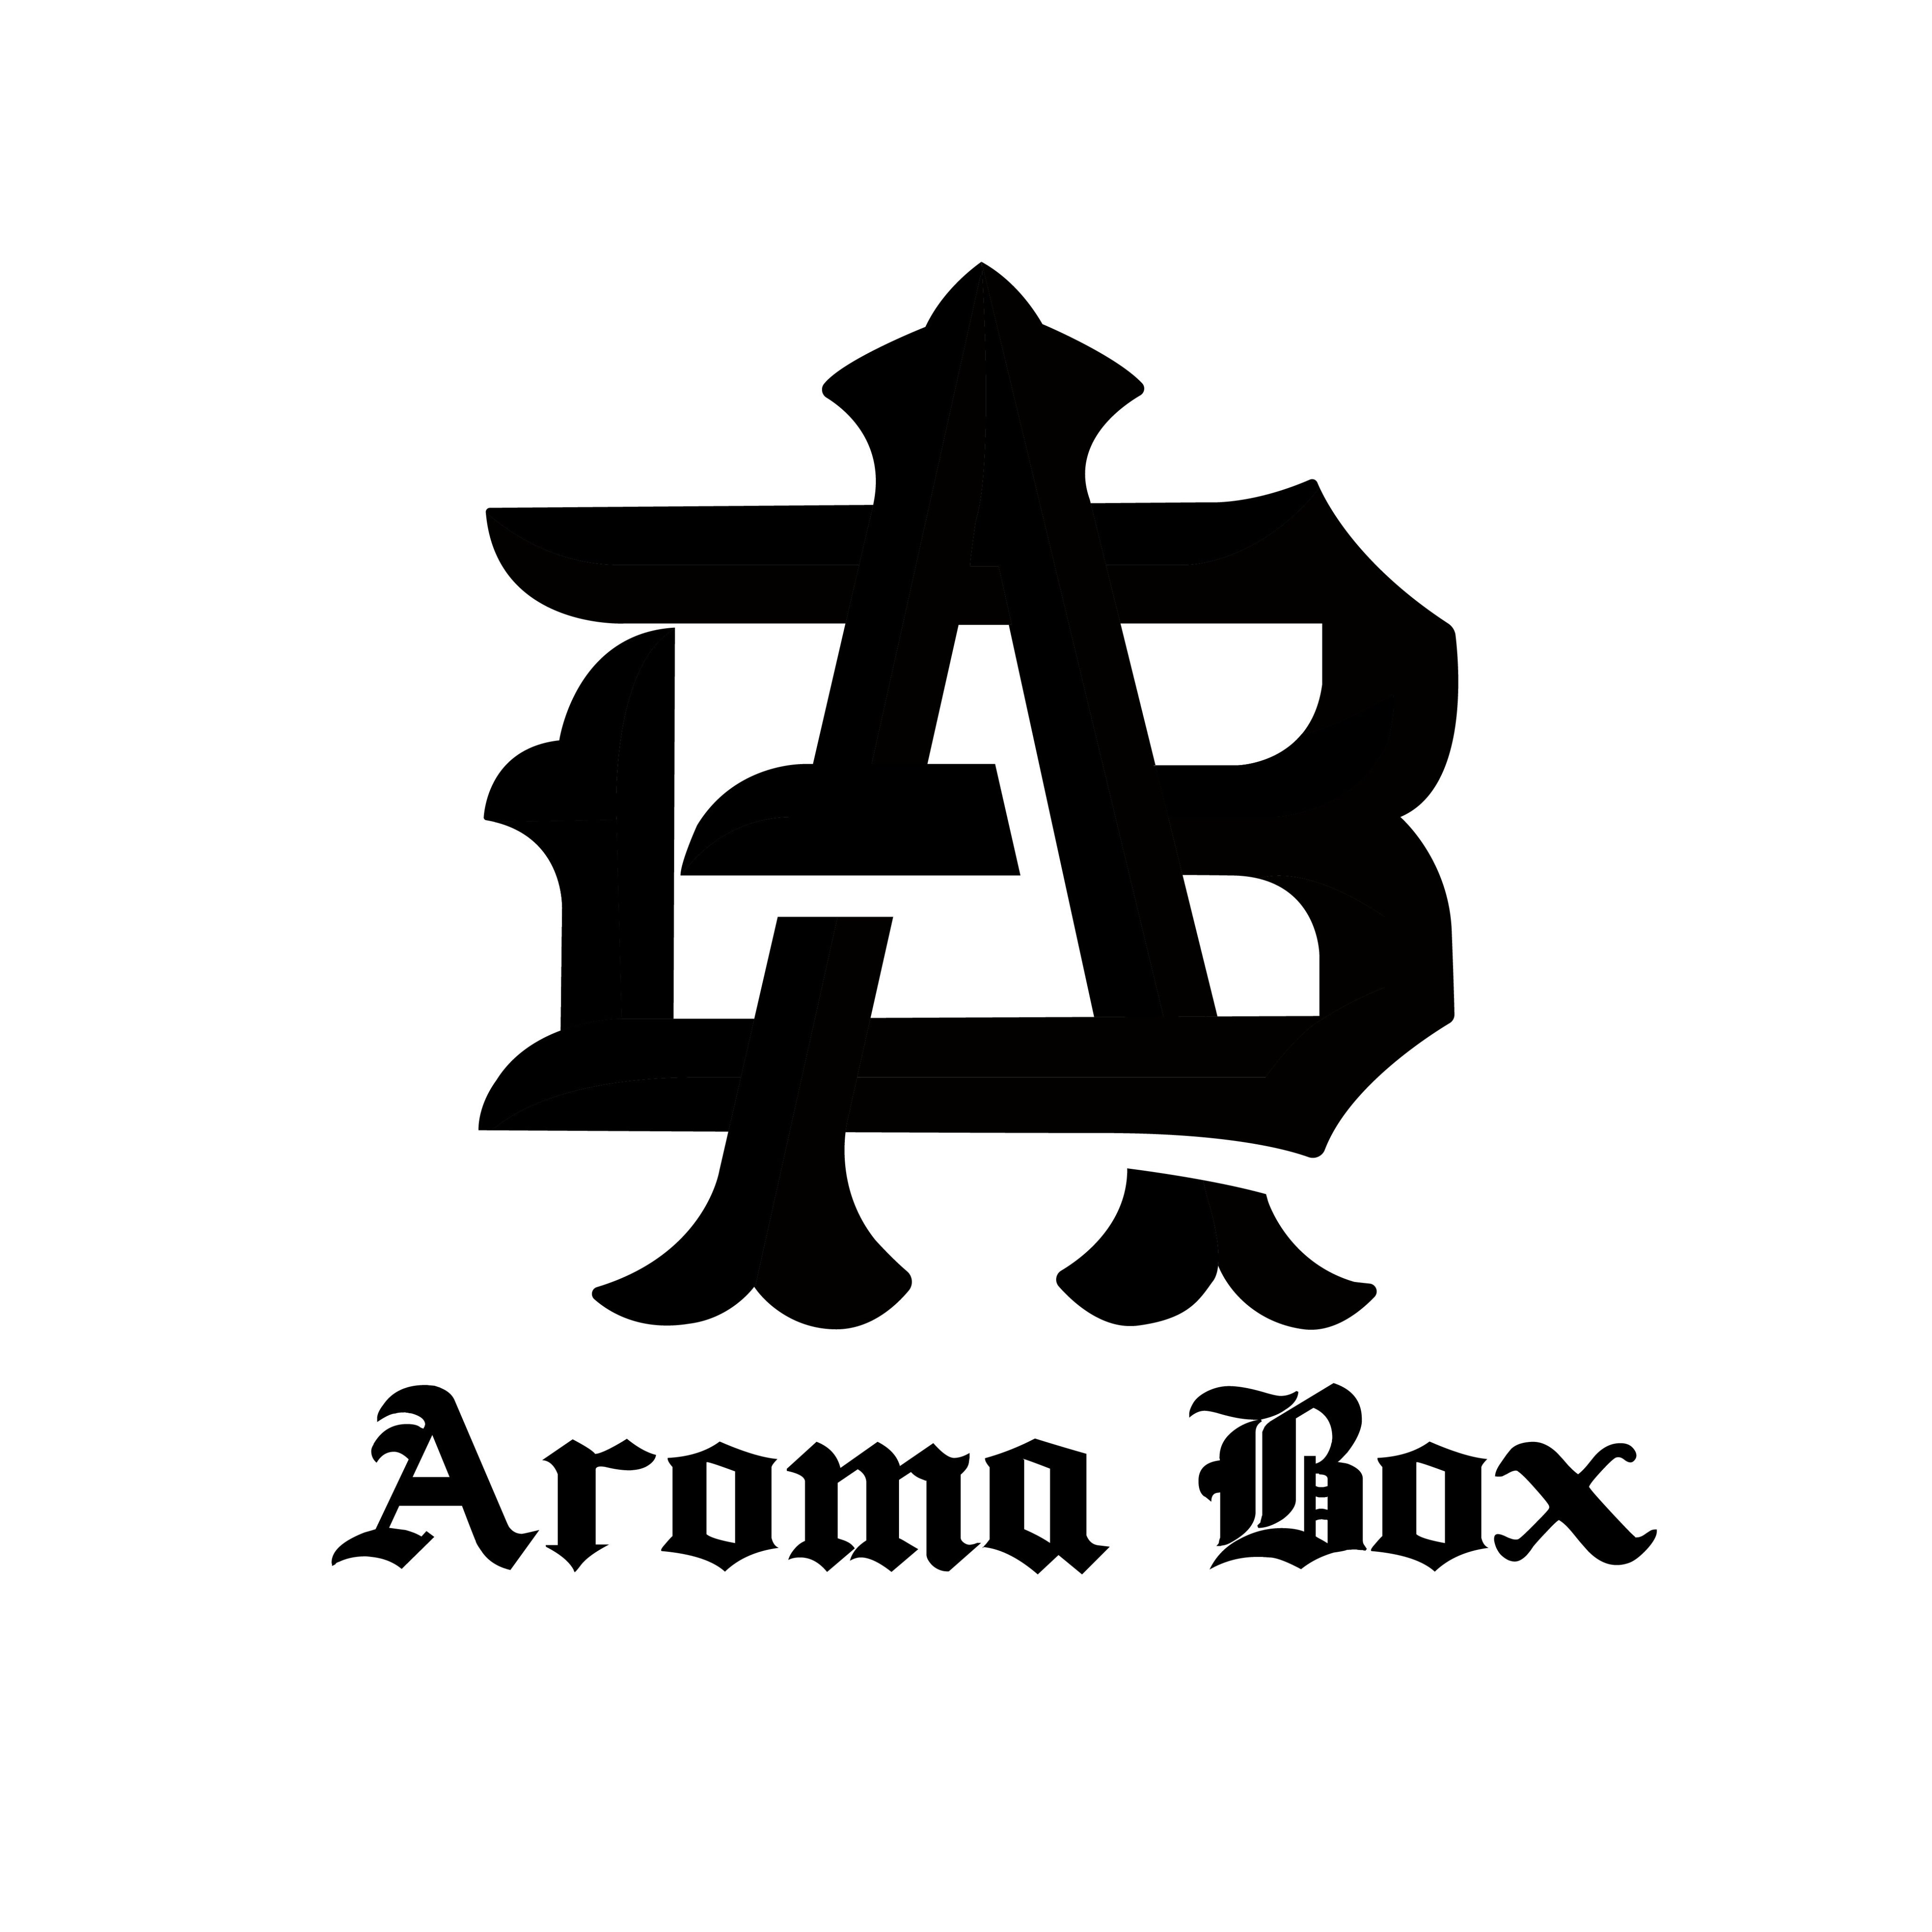 Aroma Box